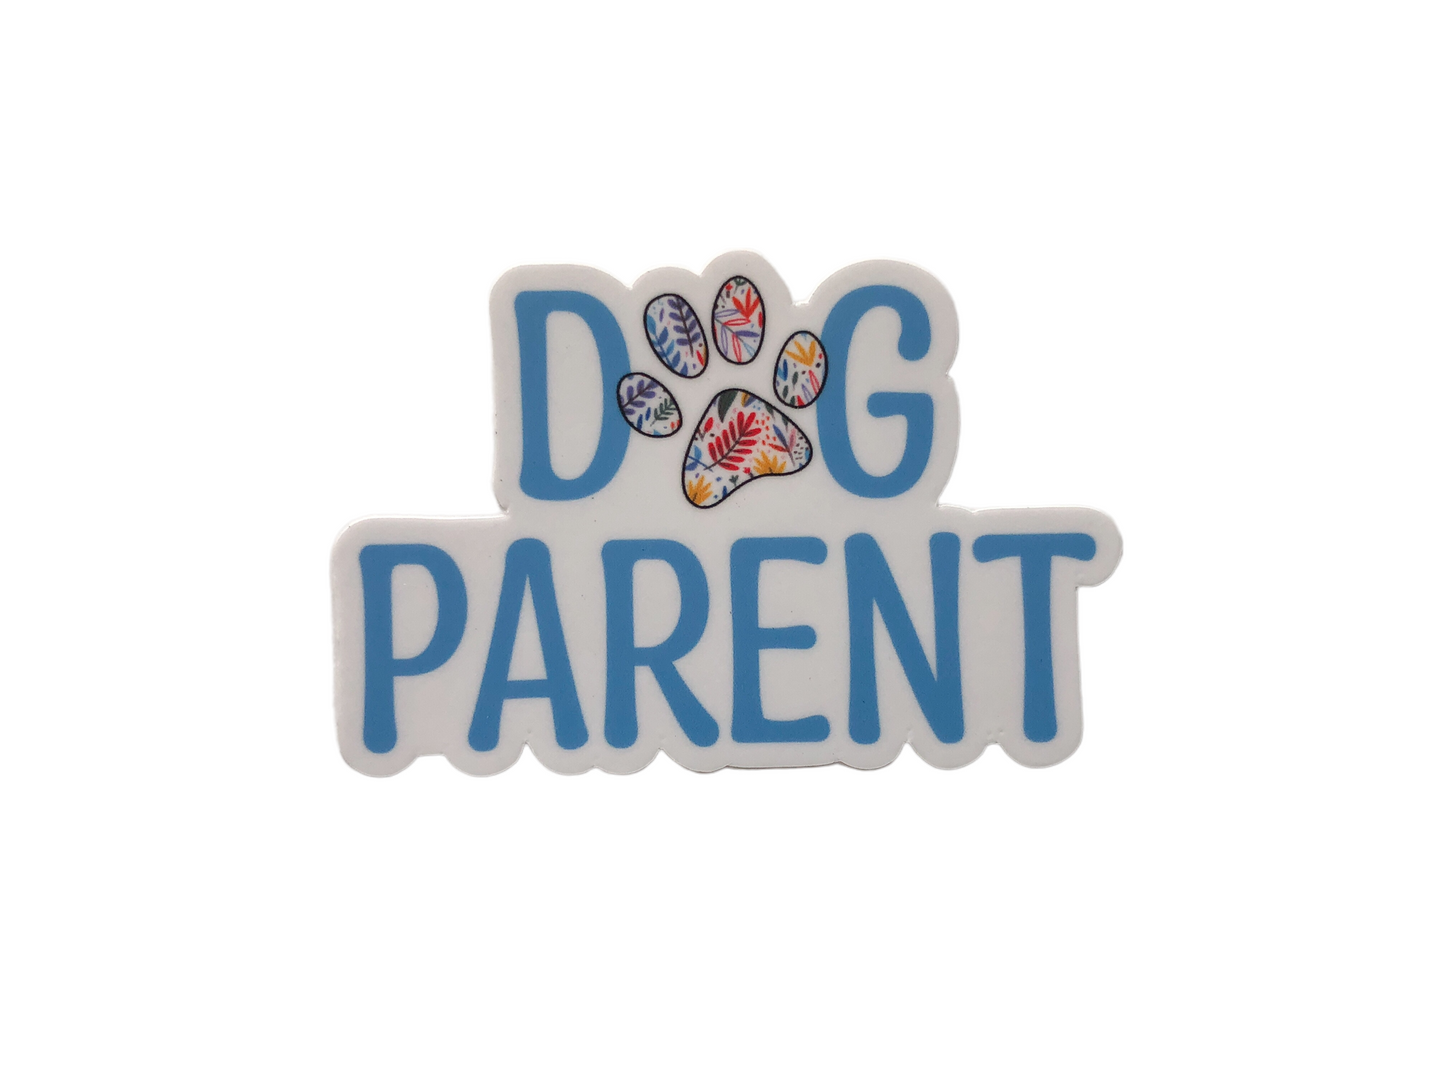 Dog Parent